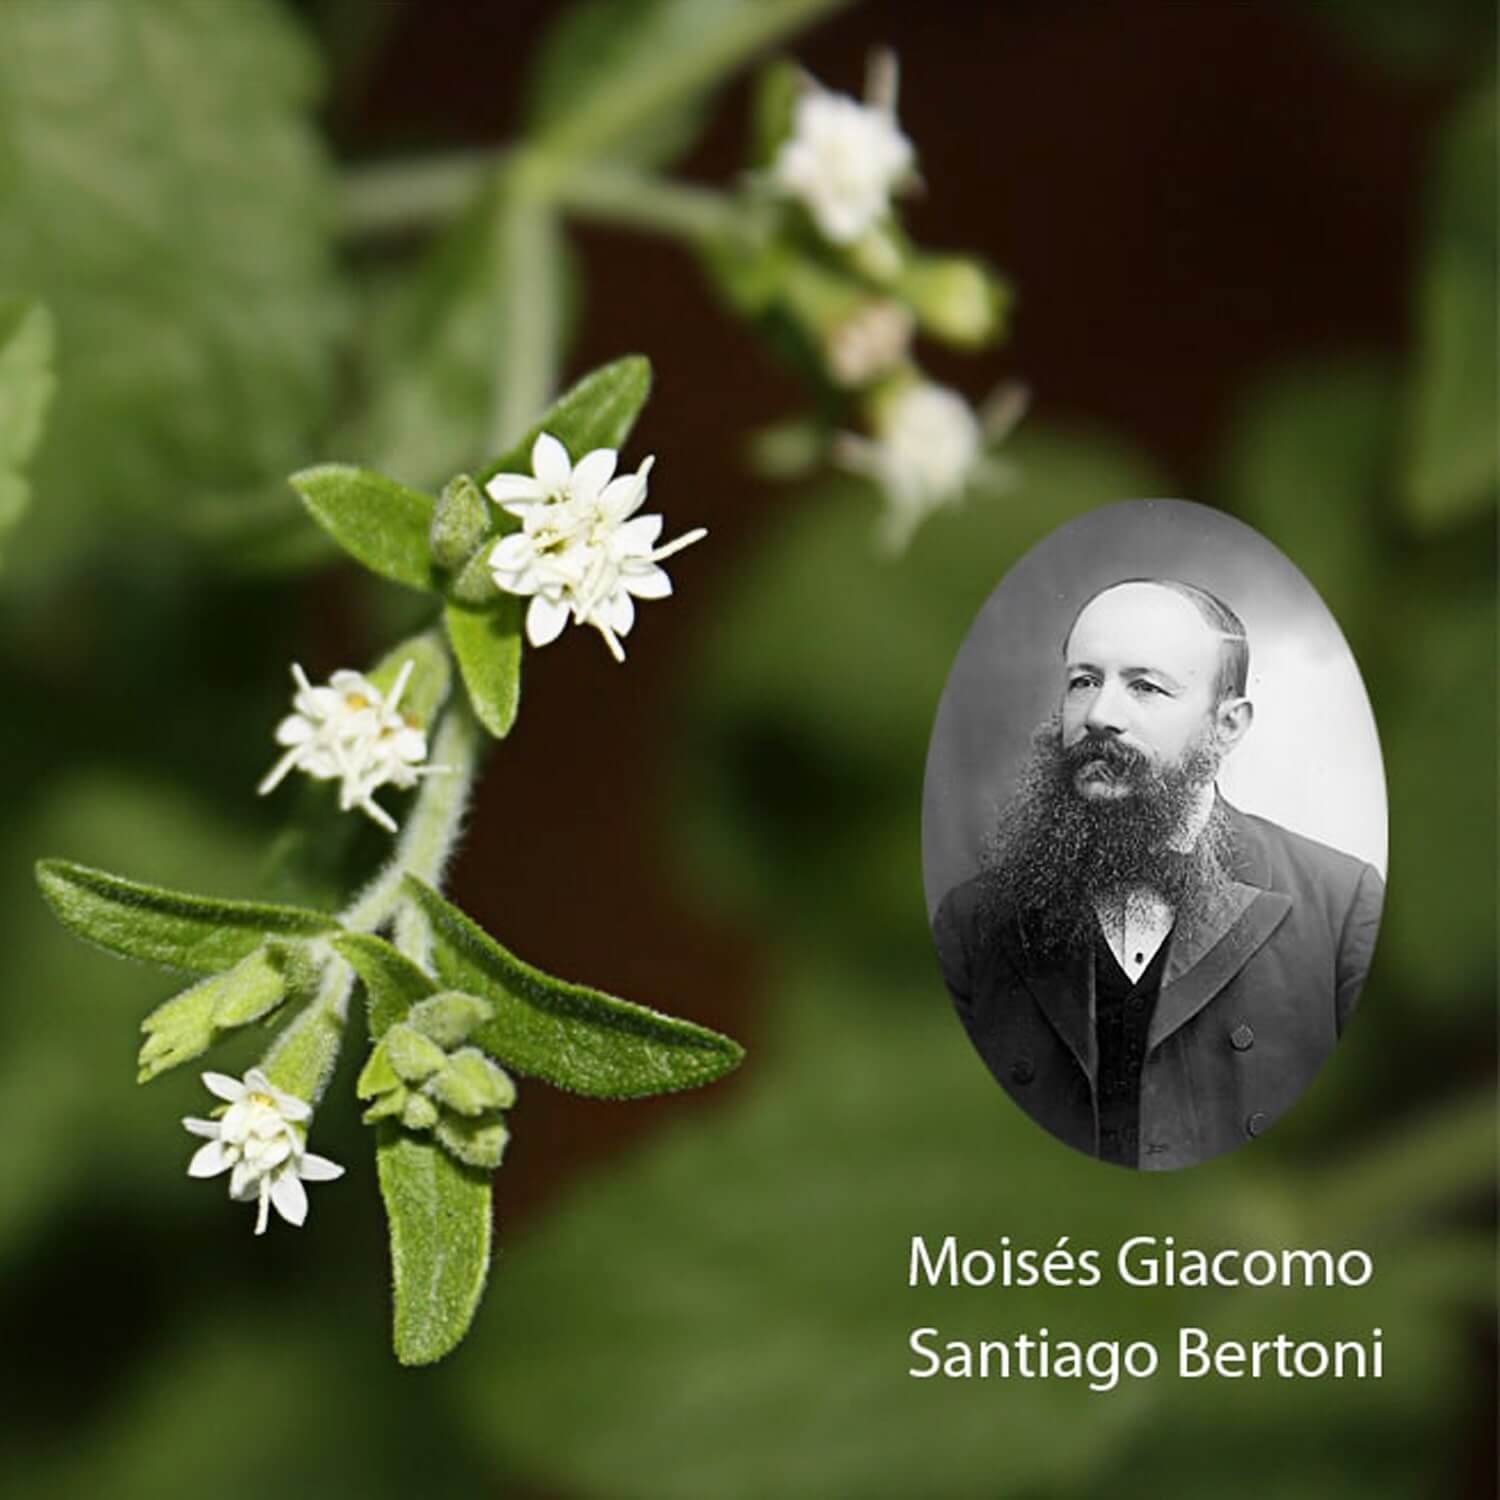 The botanist Moises Bertoni and flowers of the Stevia rebaudiana plant Steviapura